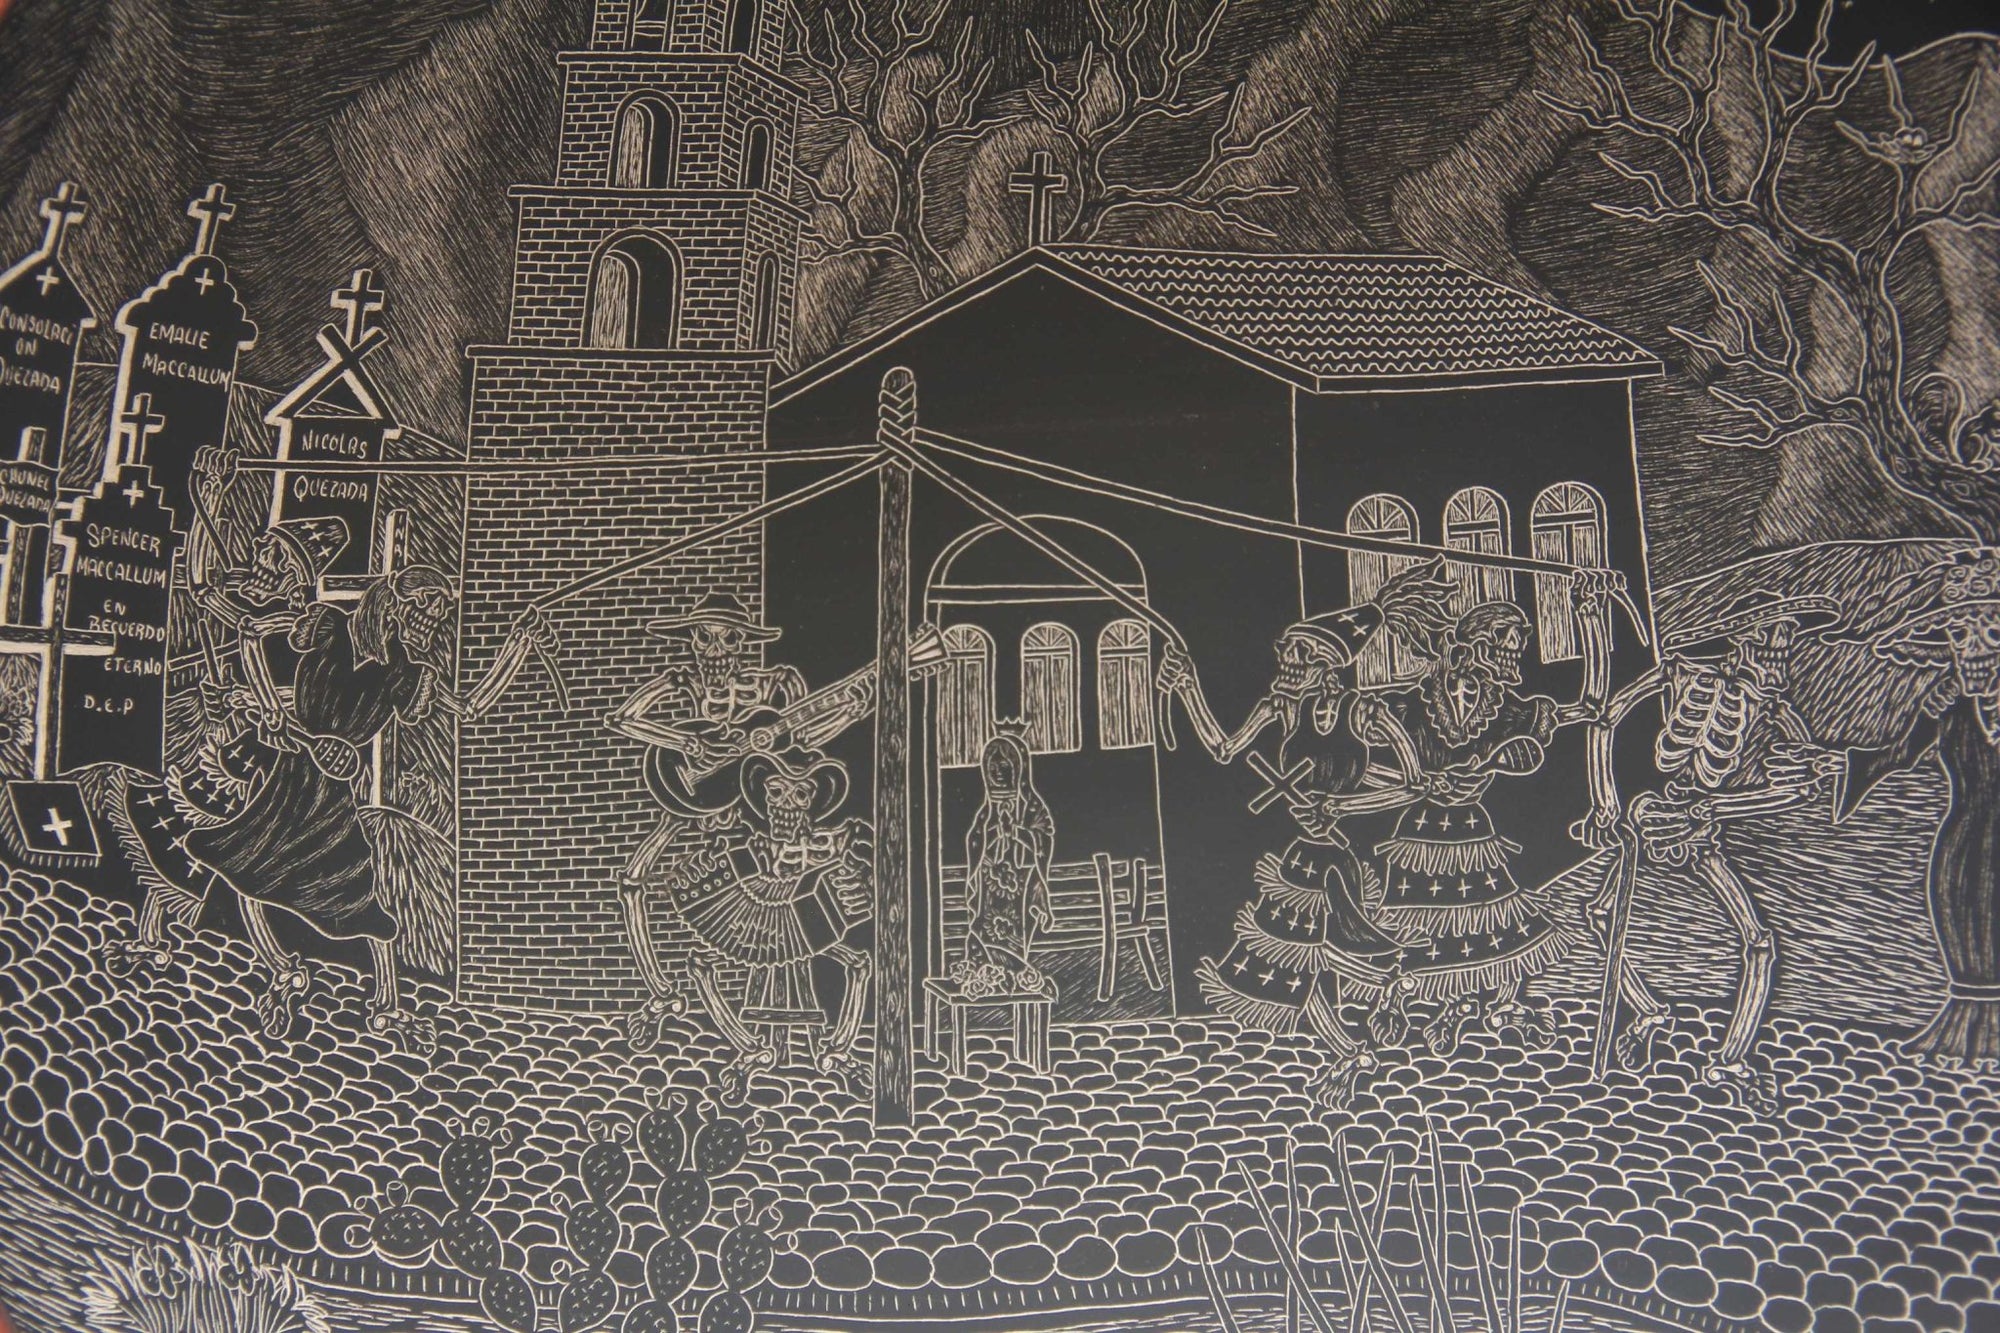 Mata Ortiz Ceramic - Assiette du Jour des Morts - Lapin sur la Lune la nuit - Art Huichol - Marakame